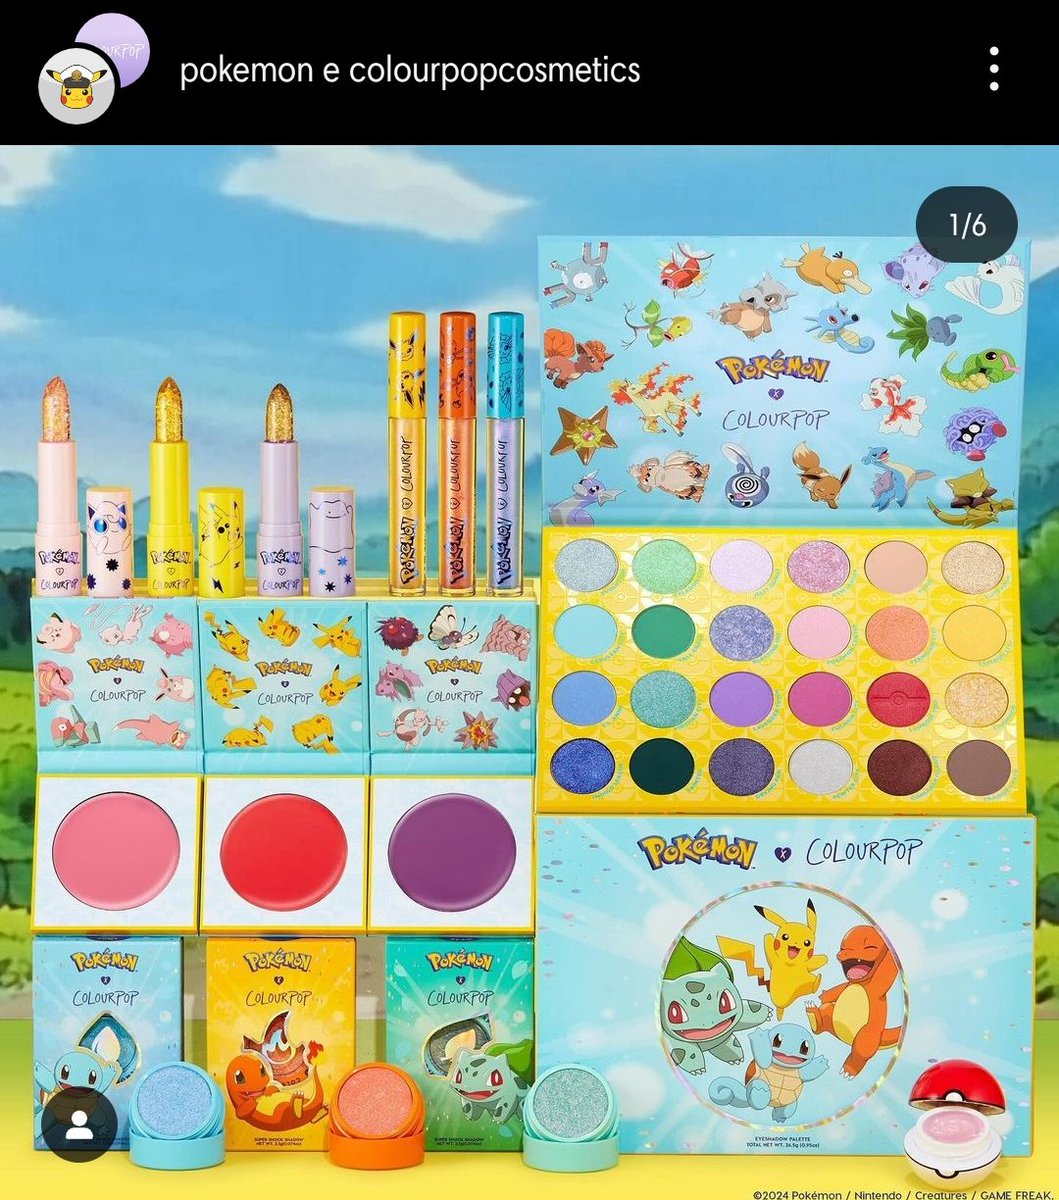 Gente EU VOU FALIIIIR 
A Pokémon lançou uma linha com a ColourPop e tô a pai xo na da!